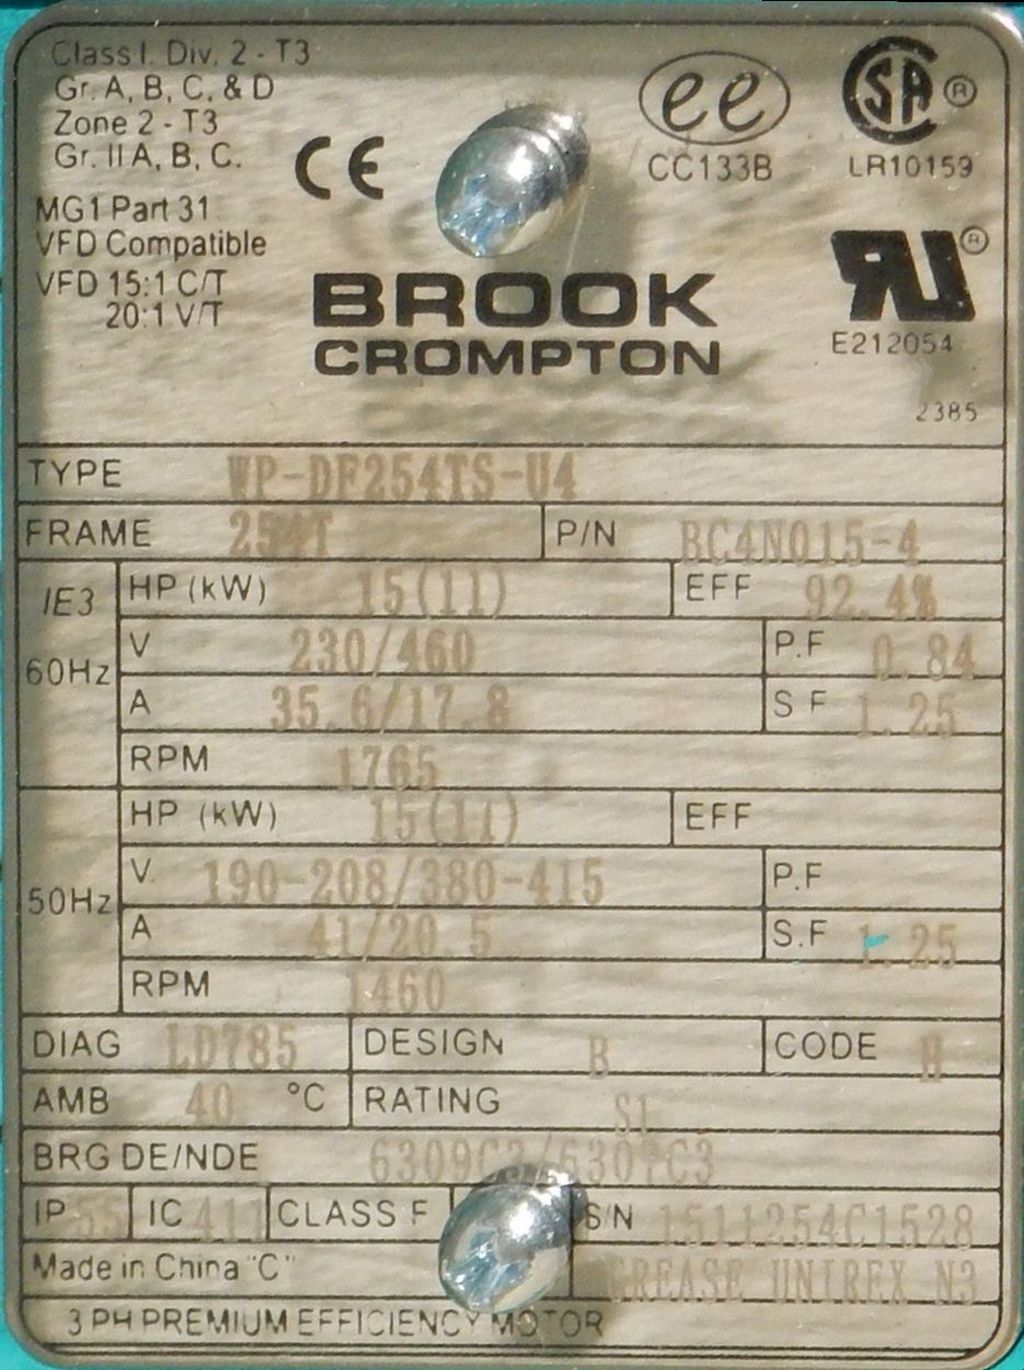 BC4N015-4-Dealers Industrial-Brook Crompton